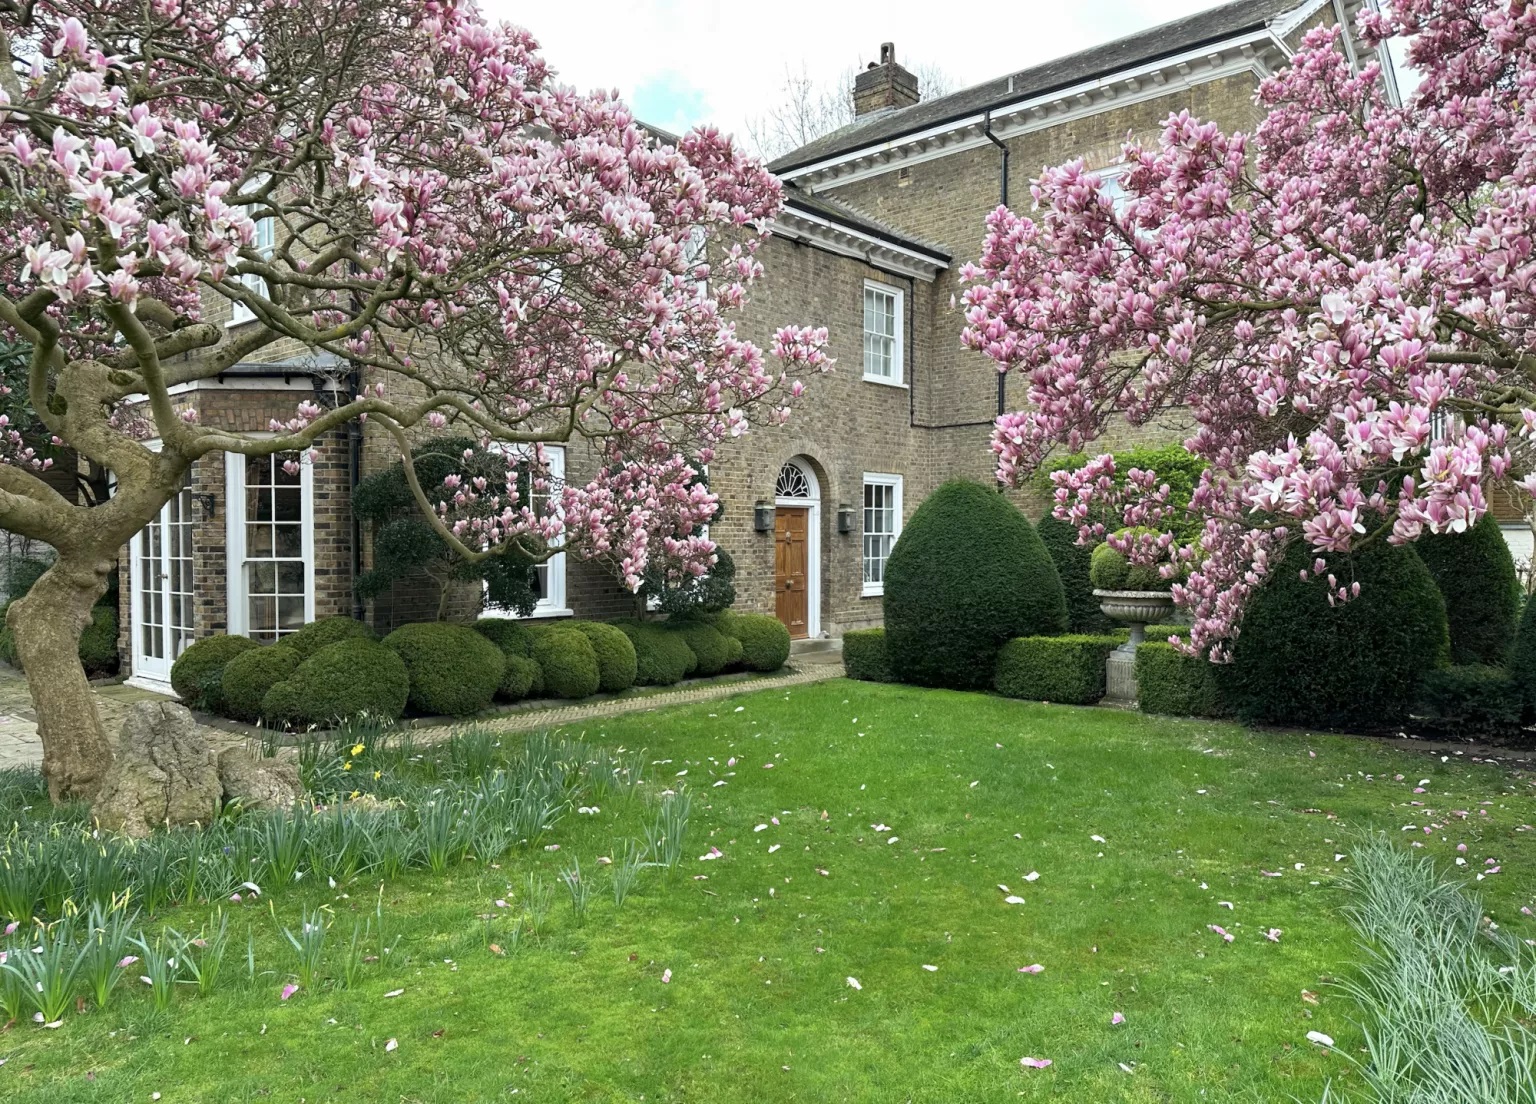 Πωλείται το πανέμορφο σπίτι του Φρέντι Μέρκιουρι στο Λονδίνο - Στα 30 εκατ. δολάρια η τιμή